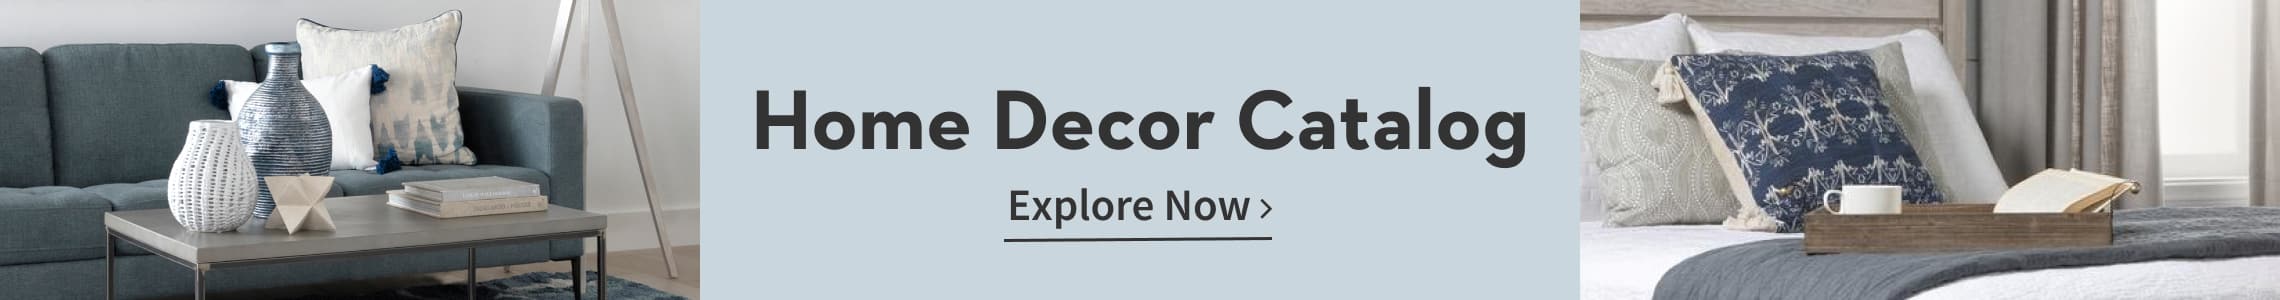 Home Decor Catalog